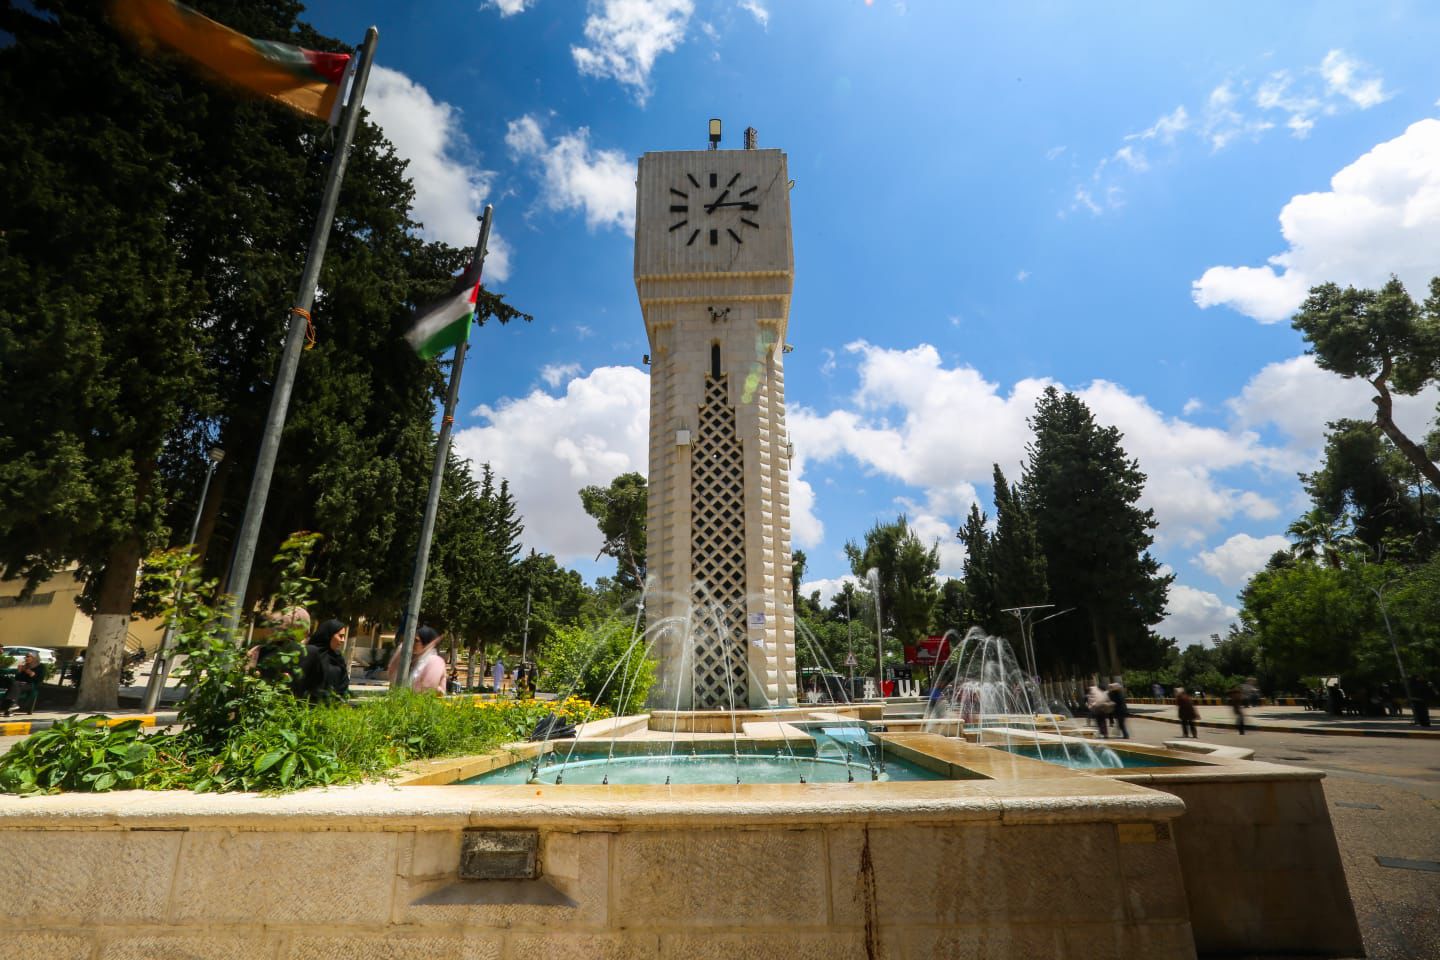 الجامعة الأردنية تعلن التعليم عن بُعد يوم غد